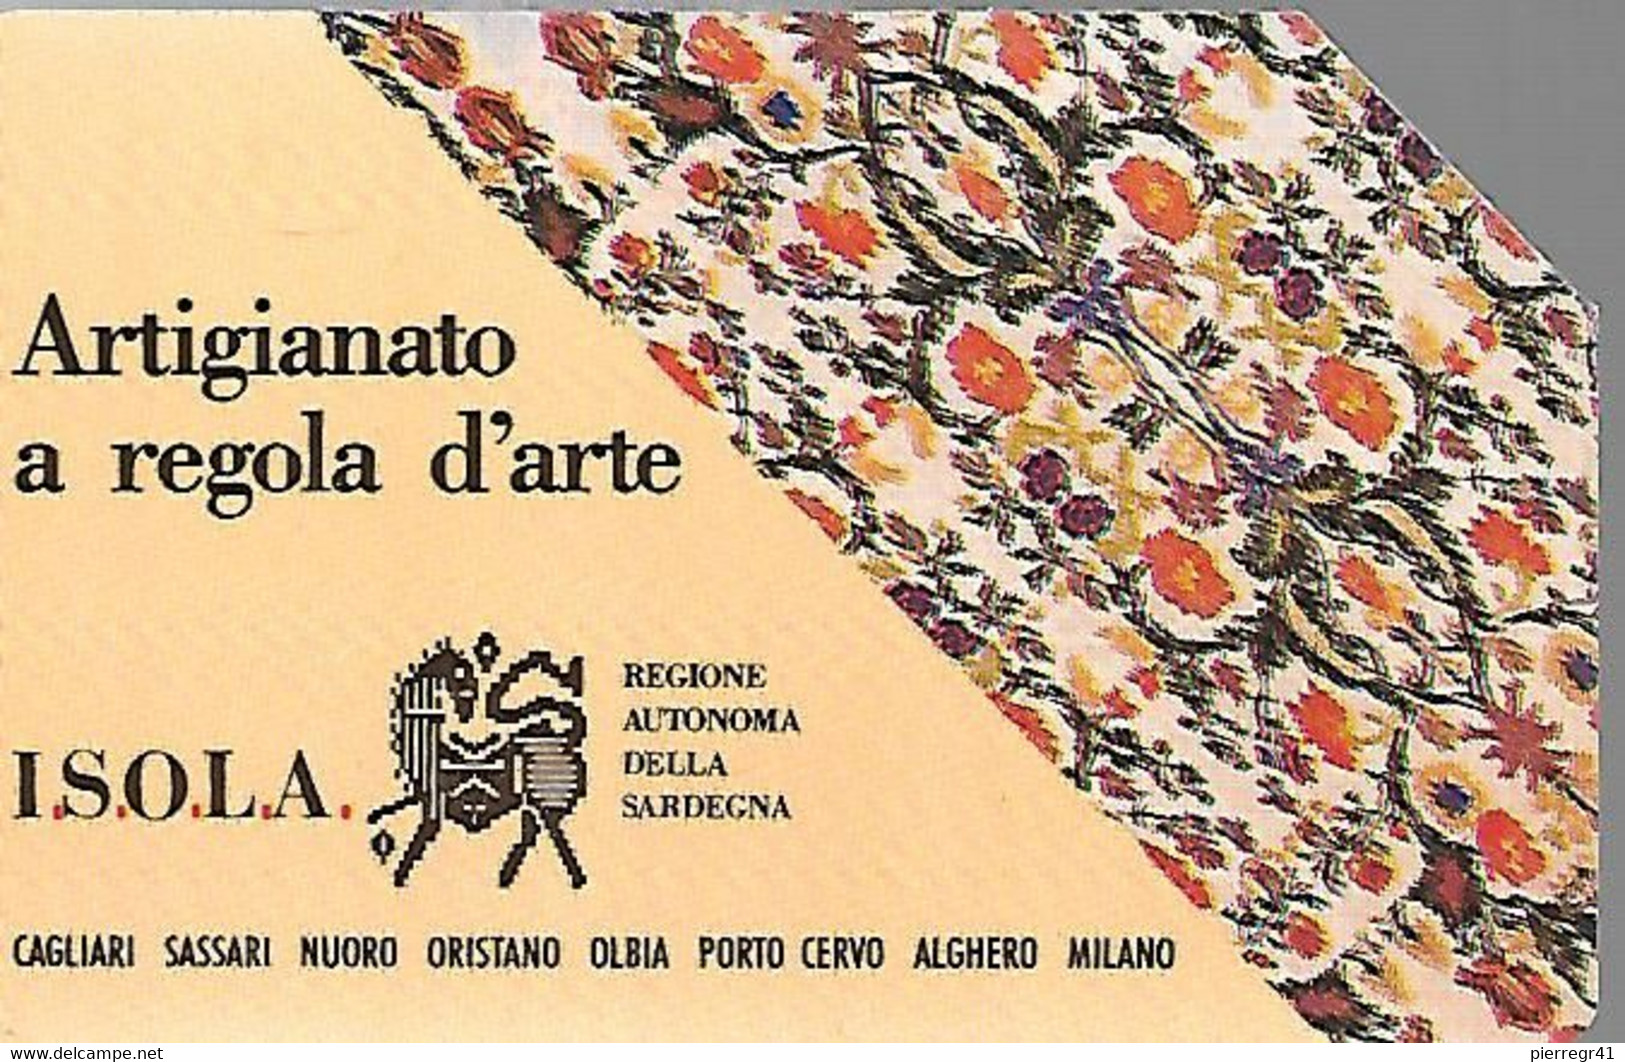 CARTE -ITALIE-Serie Pubblishe Figurate-Catalogue Golden-10000L-ISOLA ARTIGIANATO-N°138-30/06/93-Pik -Utilisé-TBE-RARE - Pubbliche Precursori